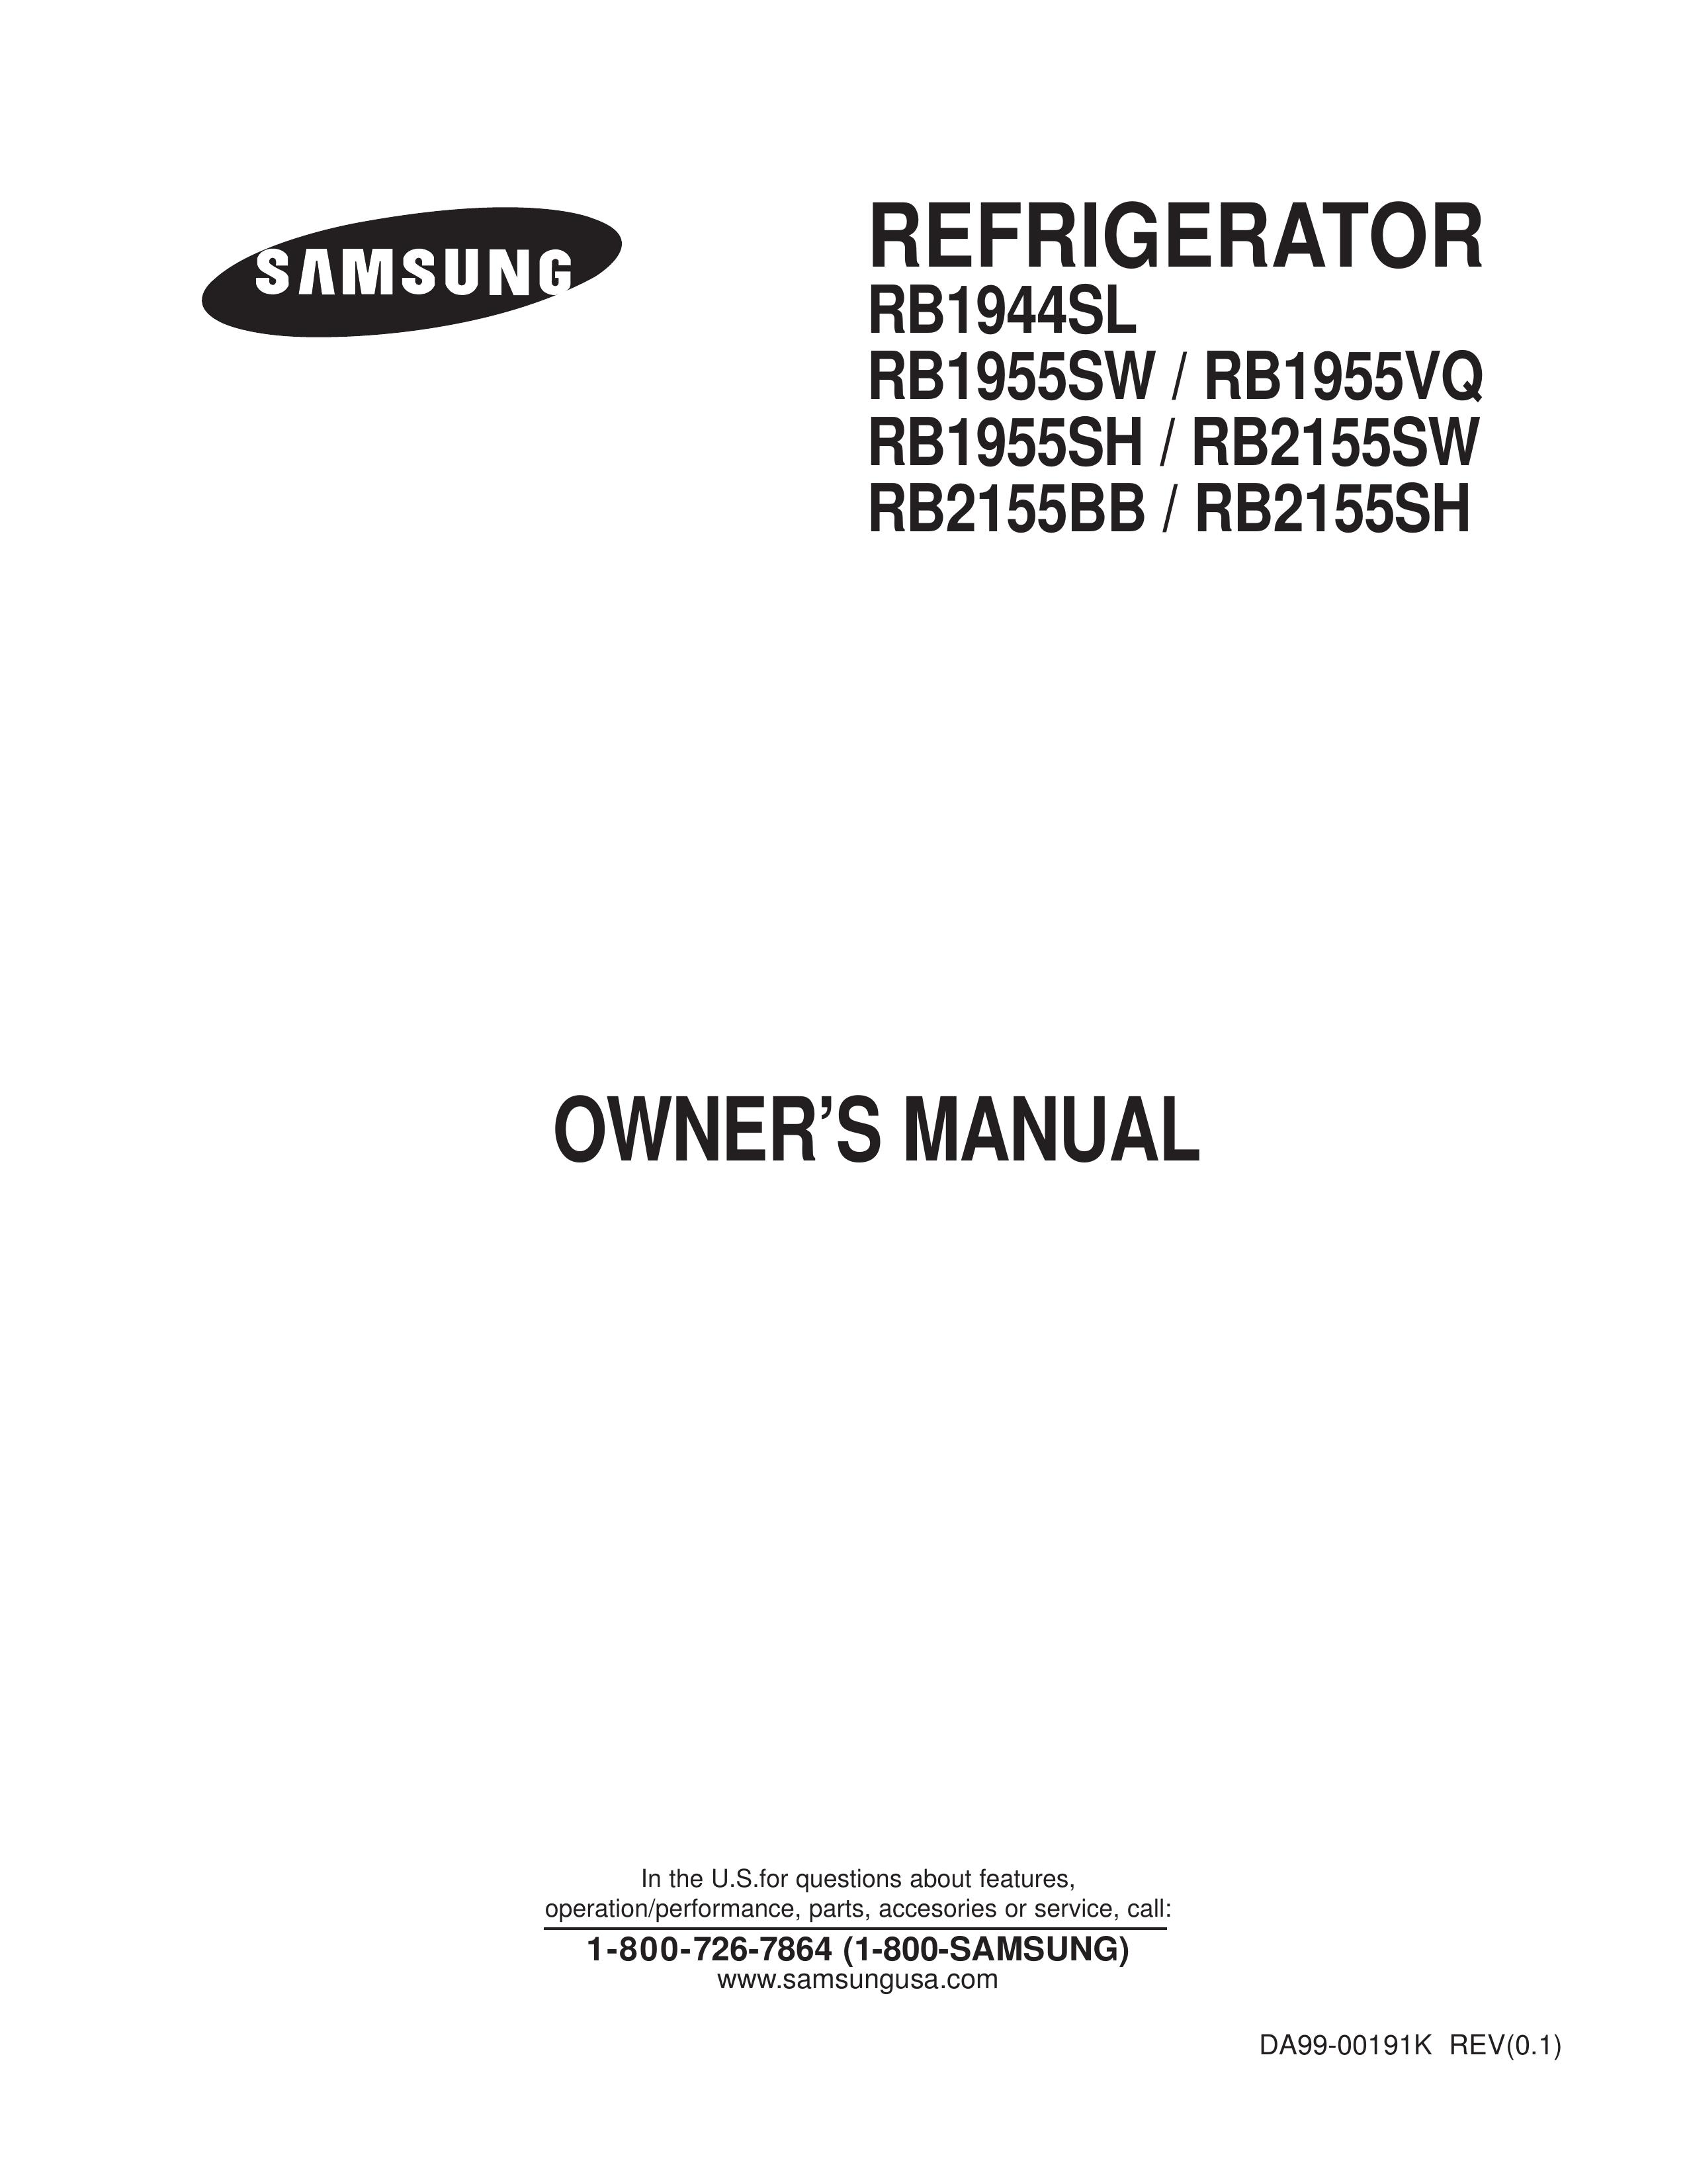 Samsung RB1955SH Refrigerator User Manual